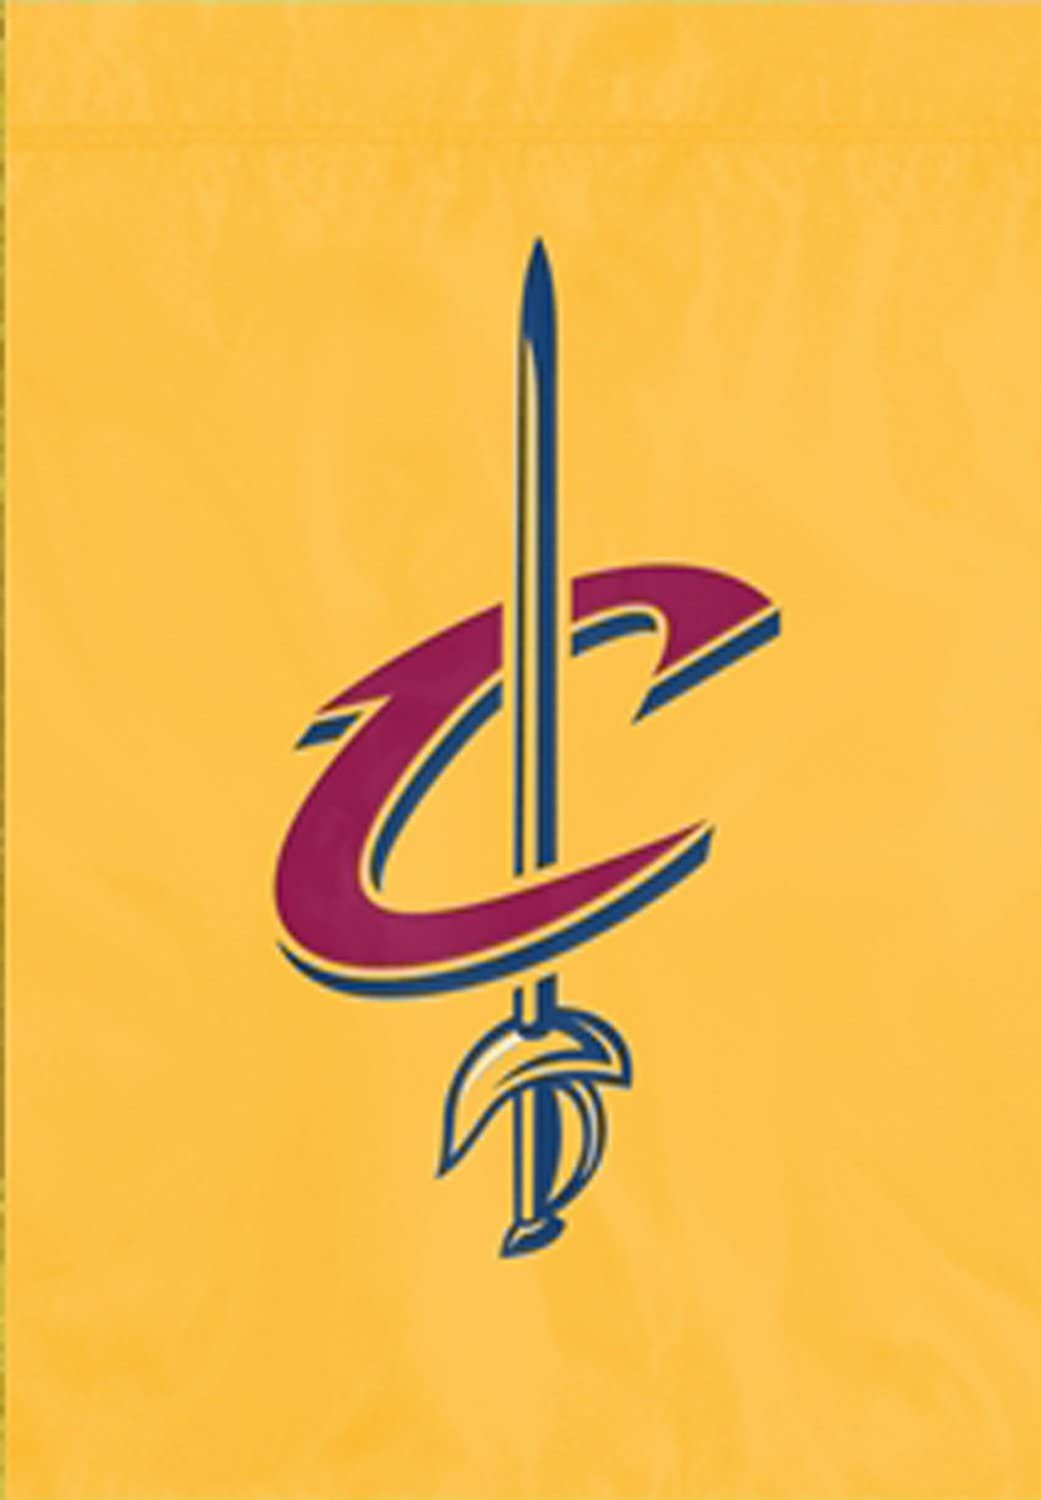 Cleveland Cavaliers Premium Garden Flag Banner Applique Embroidered 10.5x15 Inch